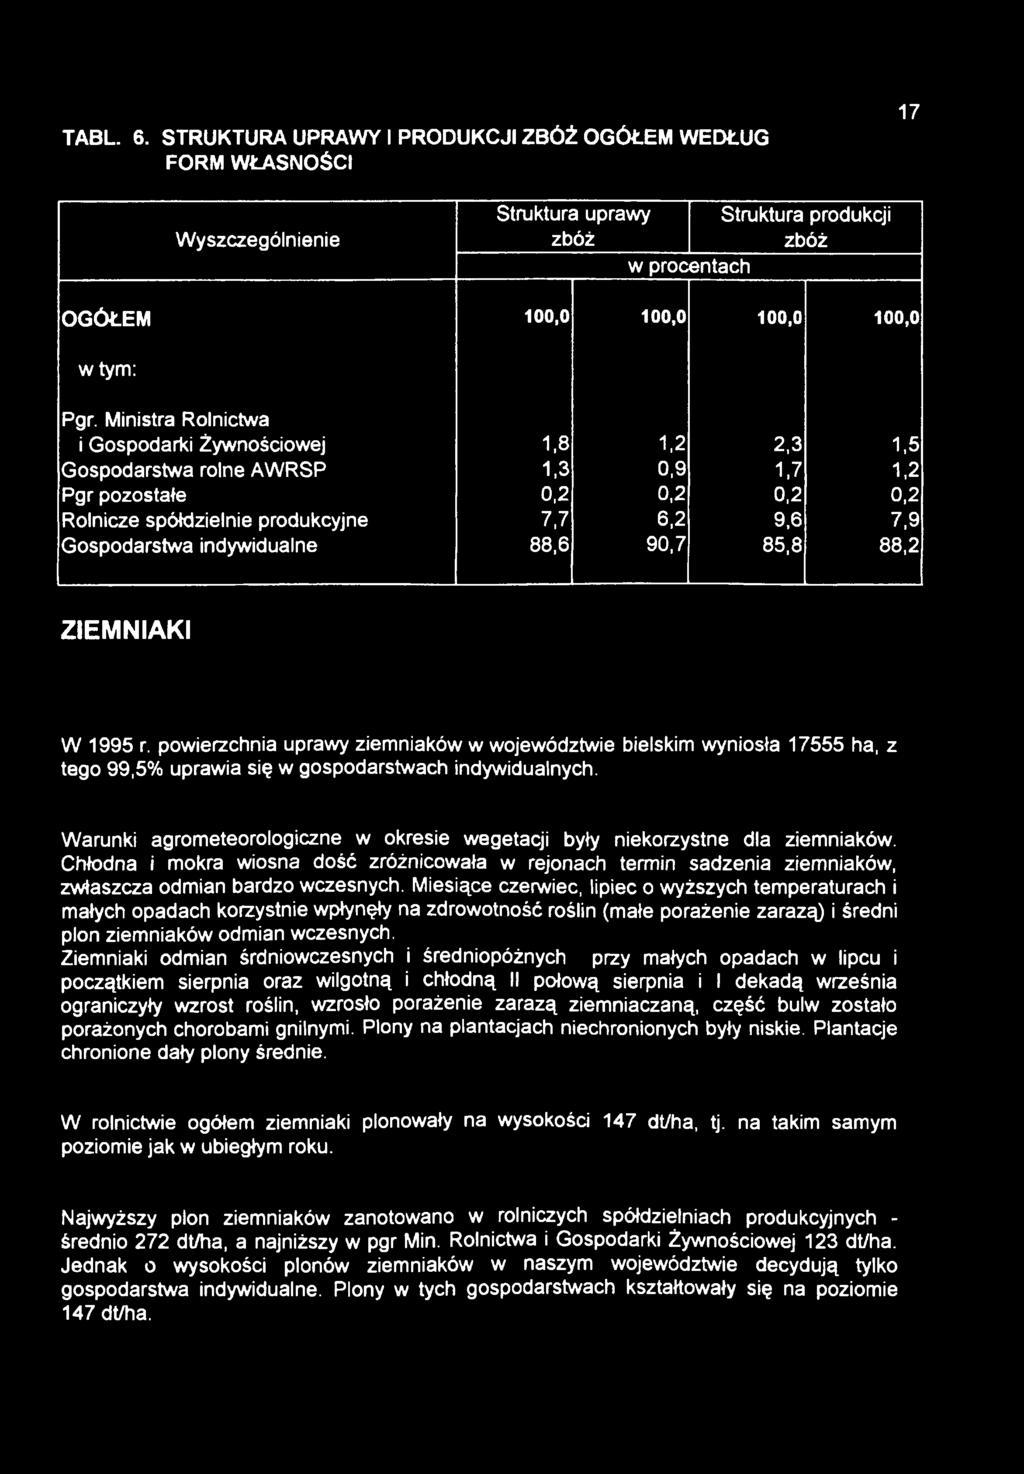 indywidualne 88,6 90,7 85,8 88,2 ZIEMNIAKI W 1995 r. powierzchnia uprawy ziemniaków w województwie bielskim wyniosła 17555 ha, z tego 99,5% uprawia się w gospodarstwach indywidualnych.